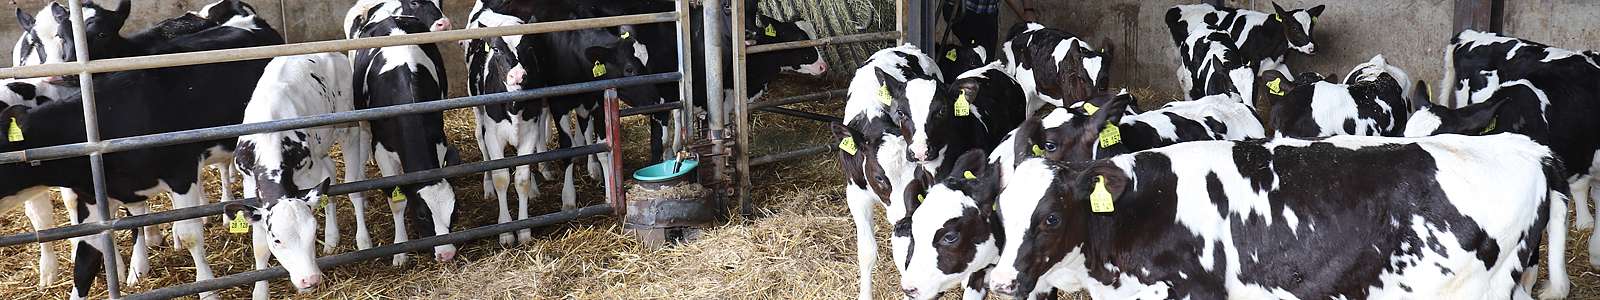 Impressum | Maiers frische Milchprodukte, Oberwihl-Hotzenwald